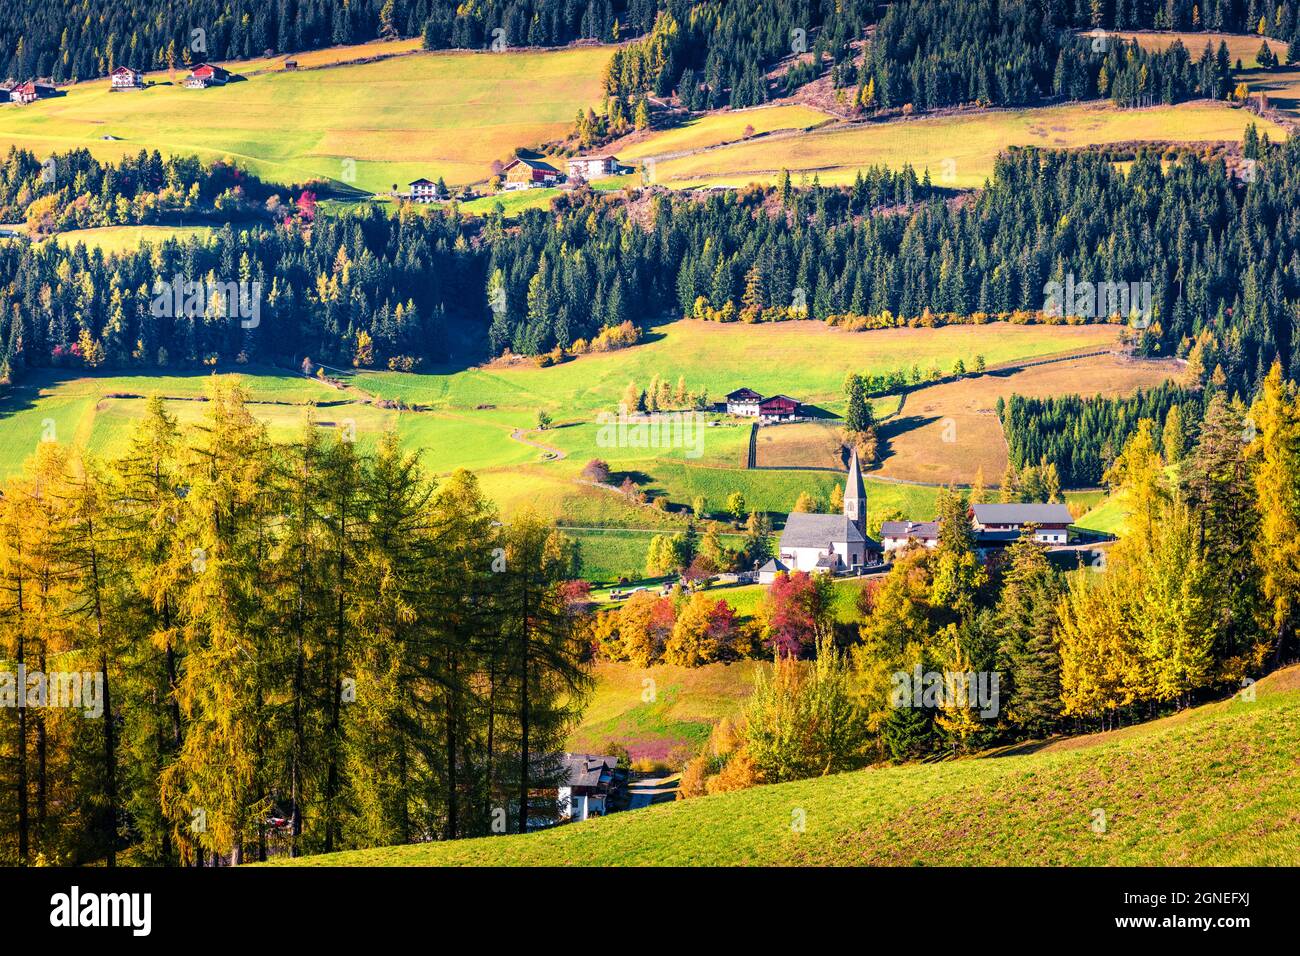 Toller Blick auf das Dorf Santa Maddalena und die Kirche Chiesa di Santa Maddalena. Farbenfrohe Herbstszene der Dolomiten, Italien, Europa. Die Schönheit von c Stockfoto